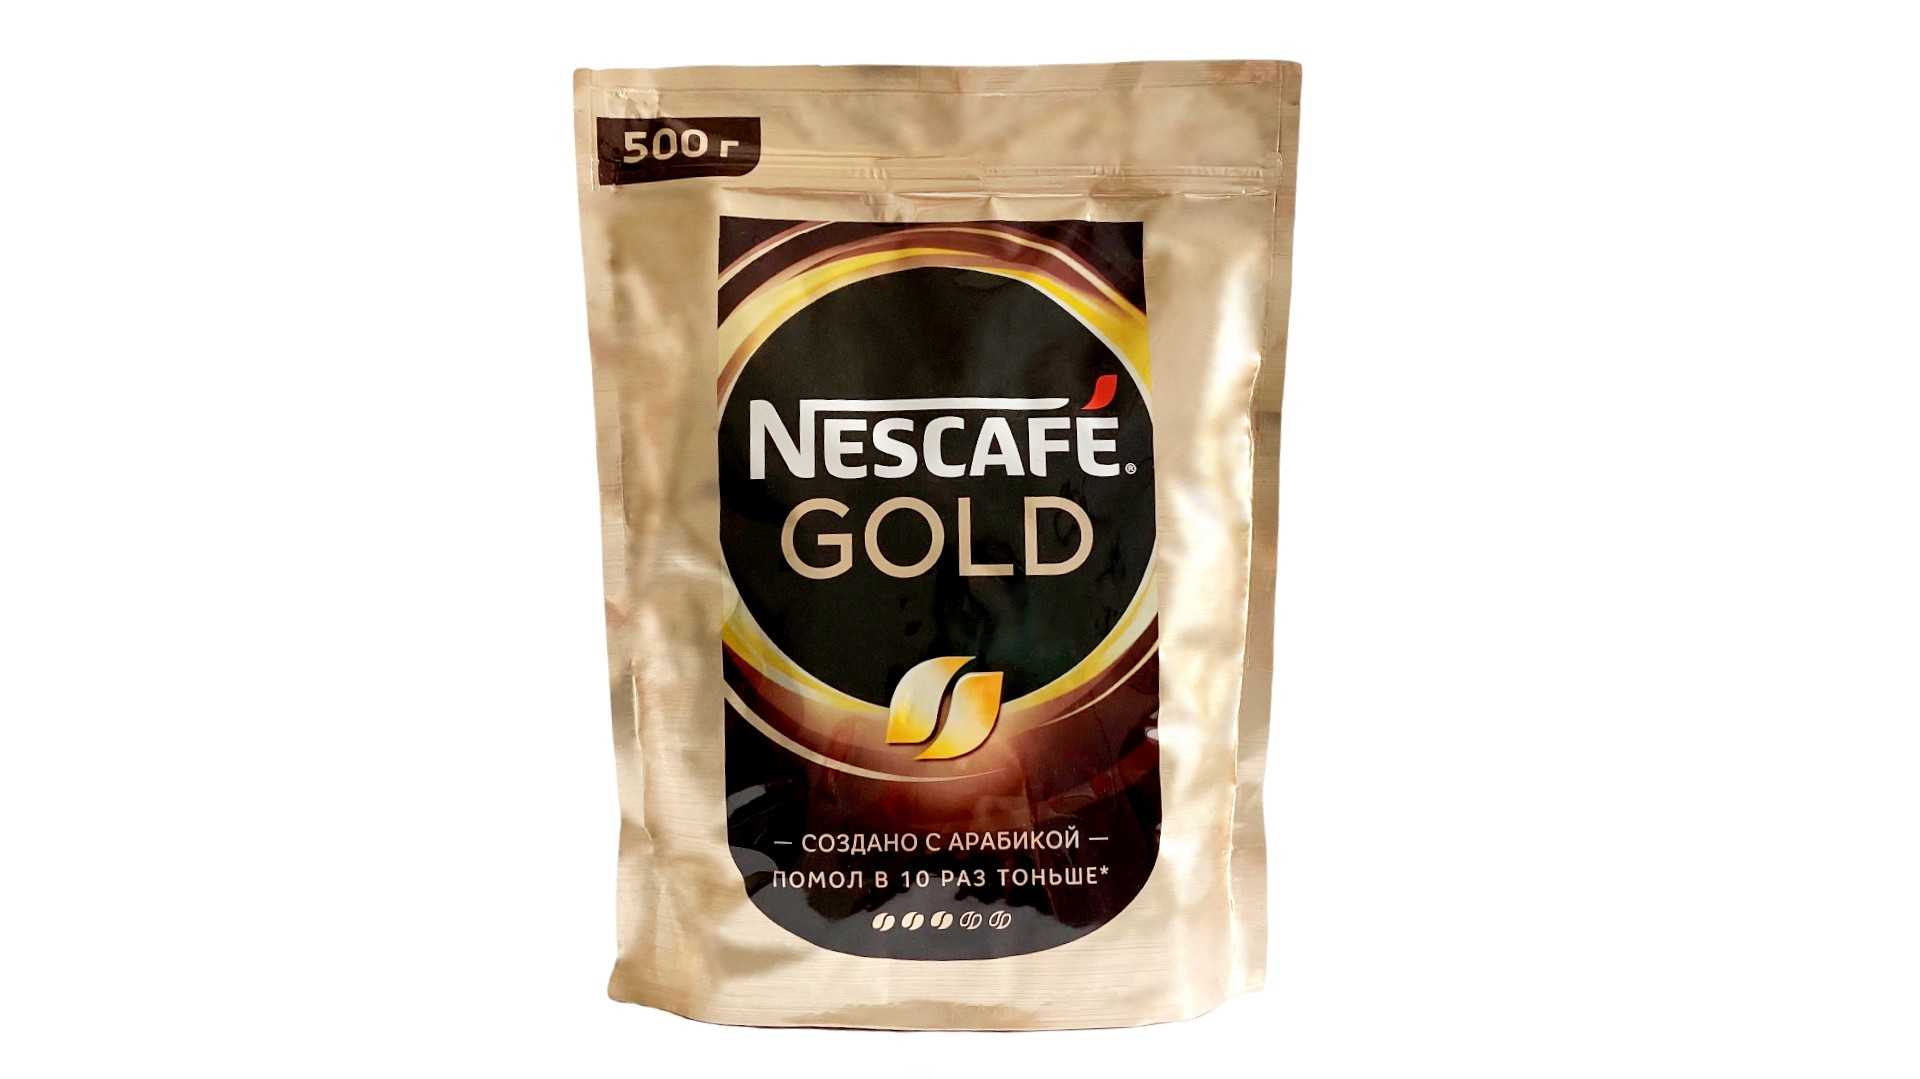 Кофе нескафе голд 500 гр. Кофе растворимый Нескафе Голд 500г сублимированный. Кофе Нескафе Голд 500г. Кофе Nescafe Gold пакет 500 гр. Кофе растворимый Нескафе Голд 500.